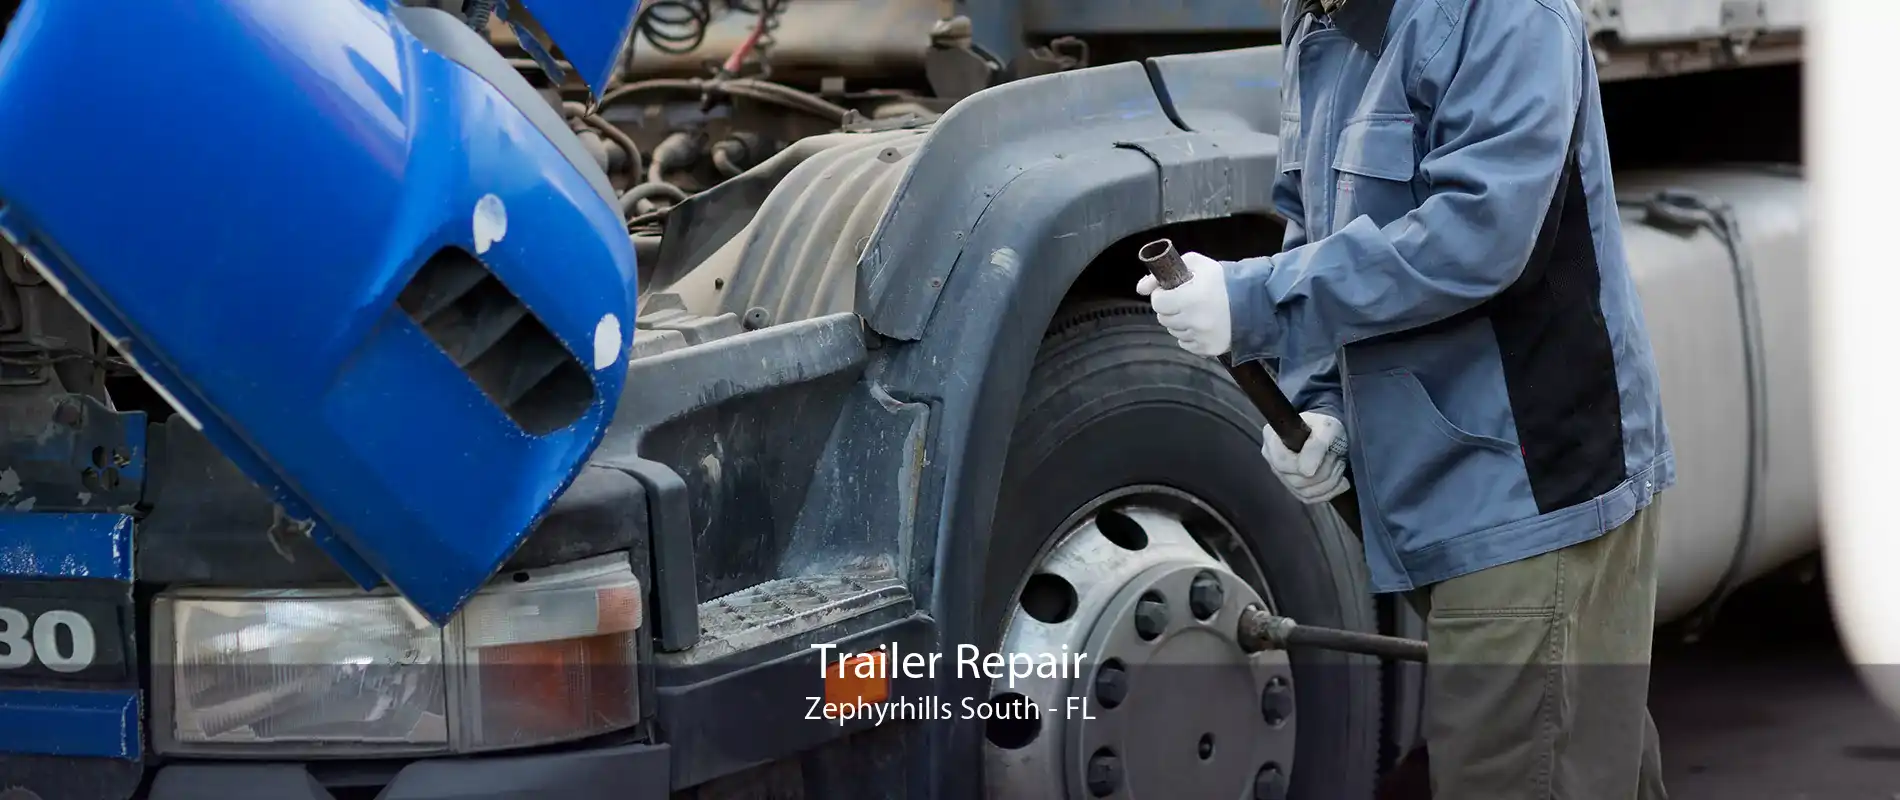 Trailer Repair Zephyrhills South - FL